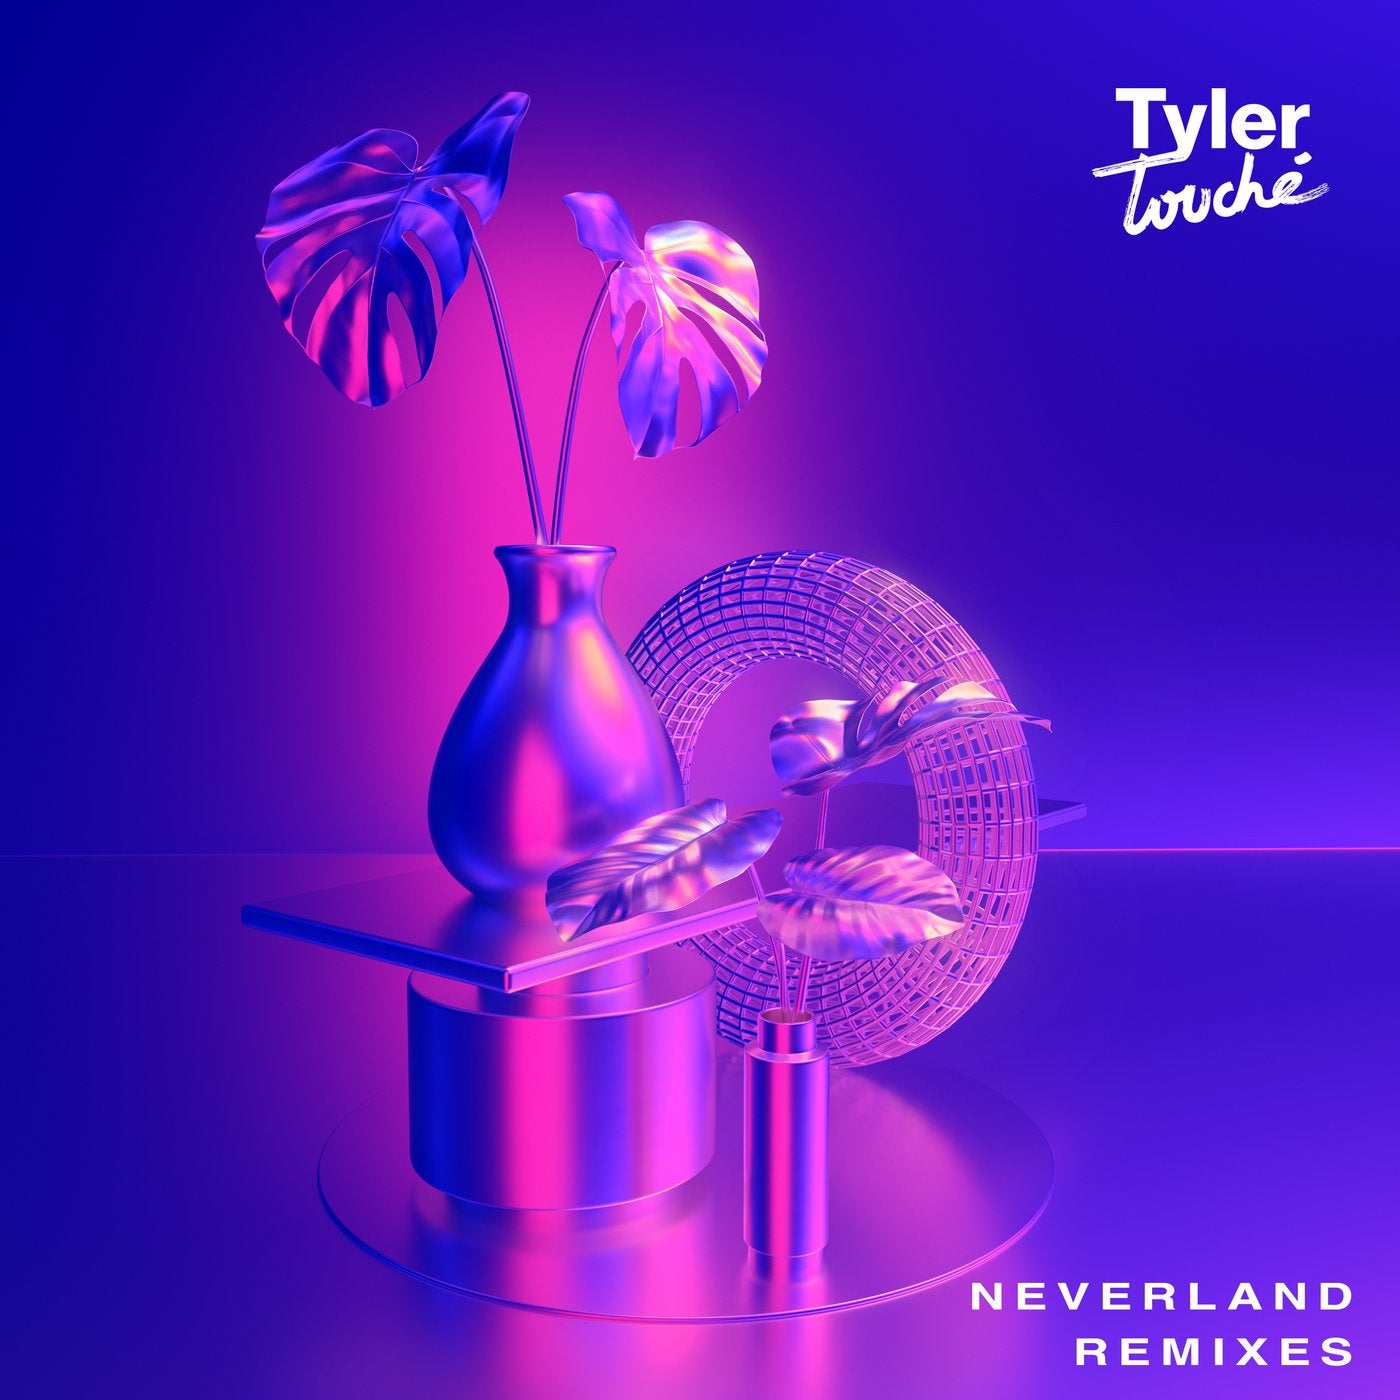 Neverland (Remixes)